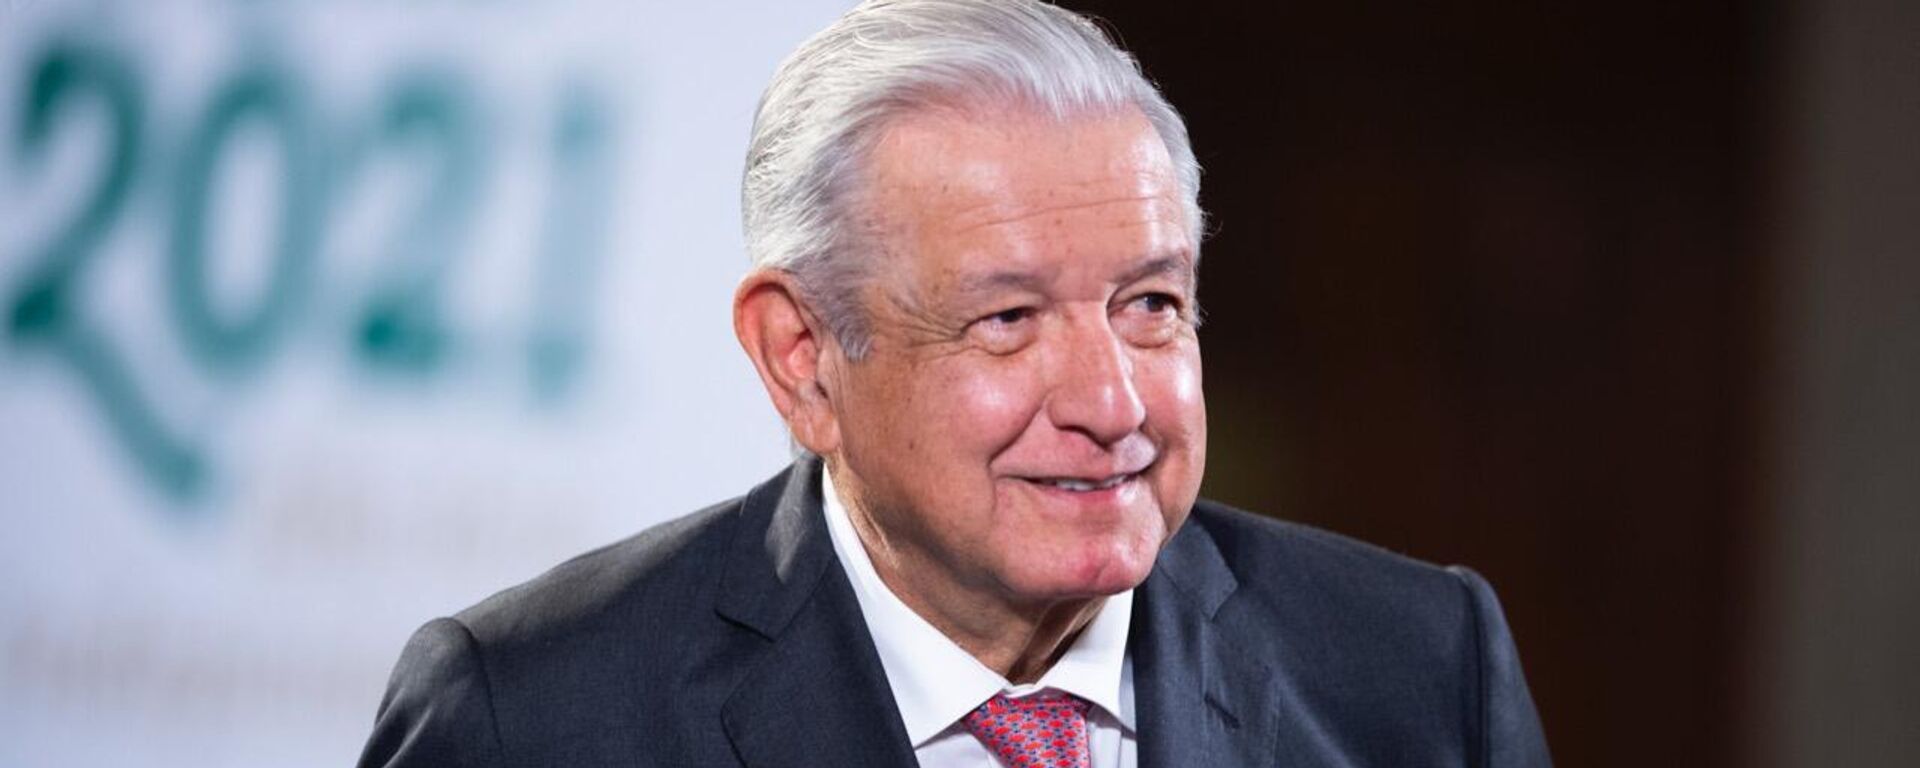 Andrés Manuel López Obrador, presidente de México - Sputnik Mundo, 1920, 08.09.2021